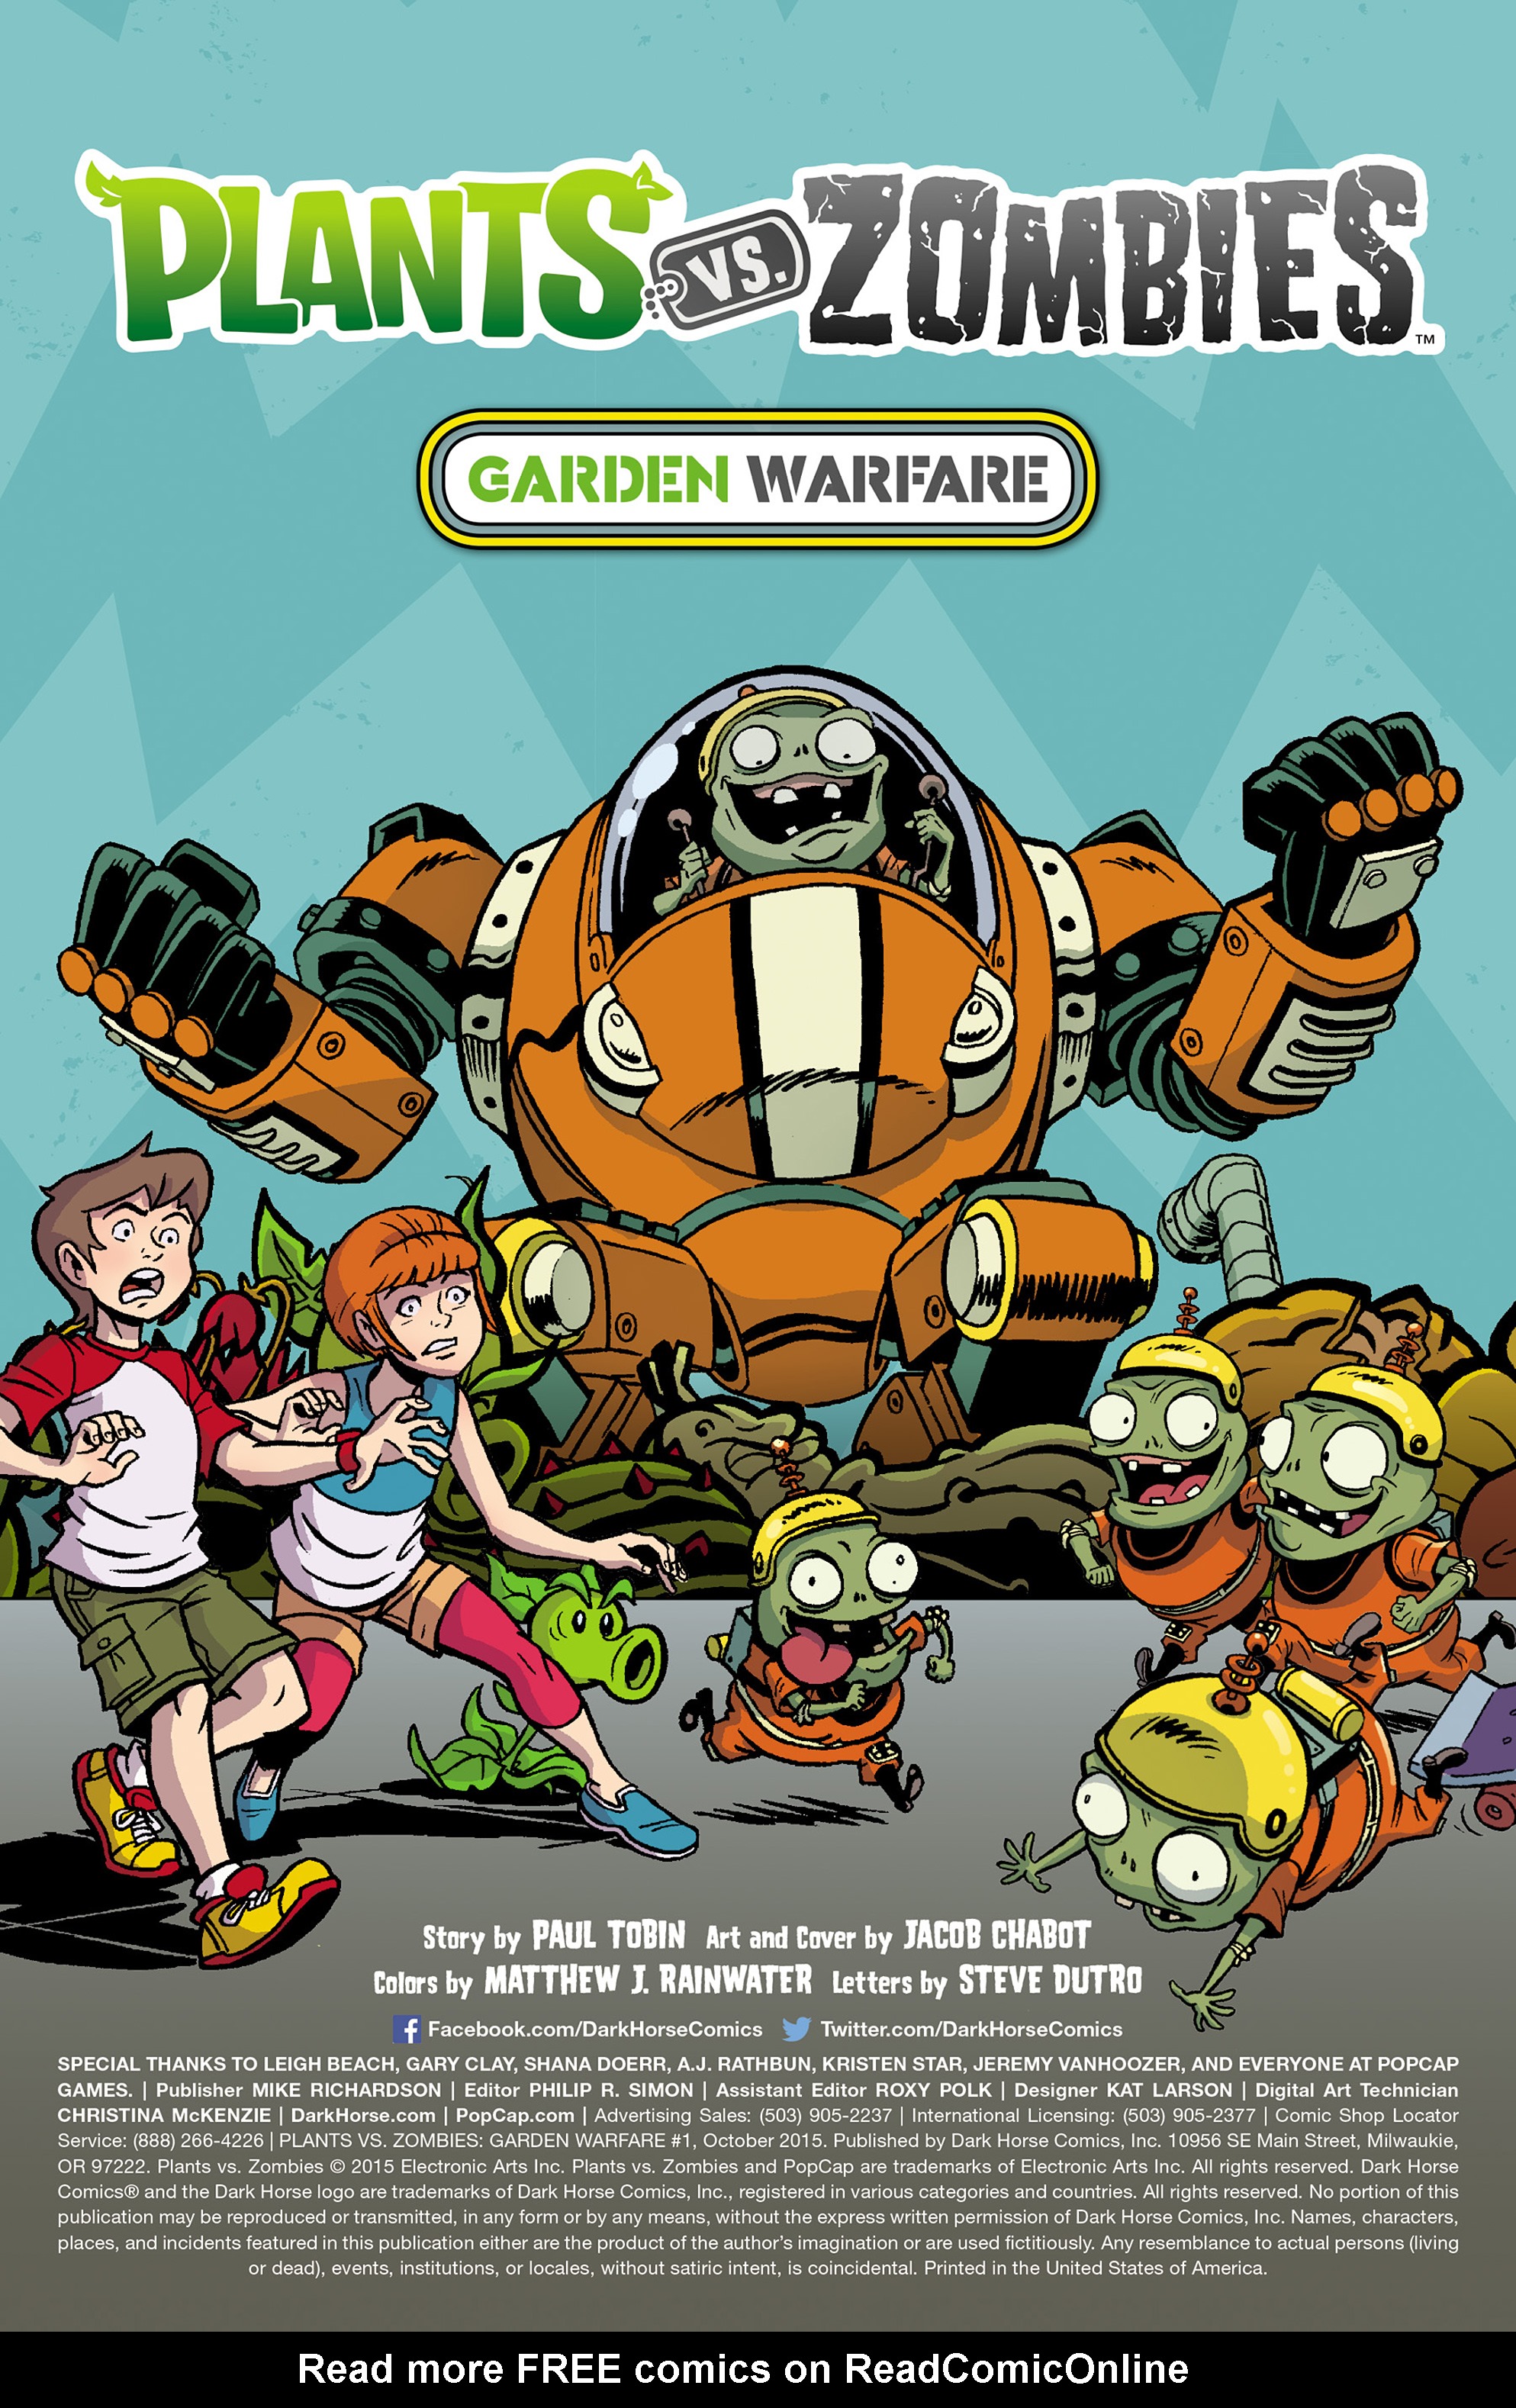 Comic Plants Vs Zombies Garden Warfare Issue 3